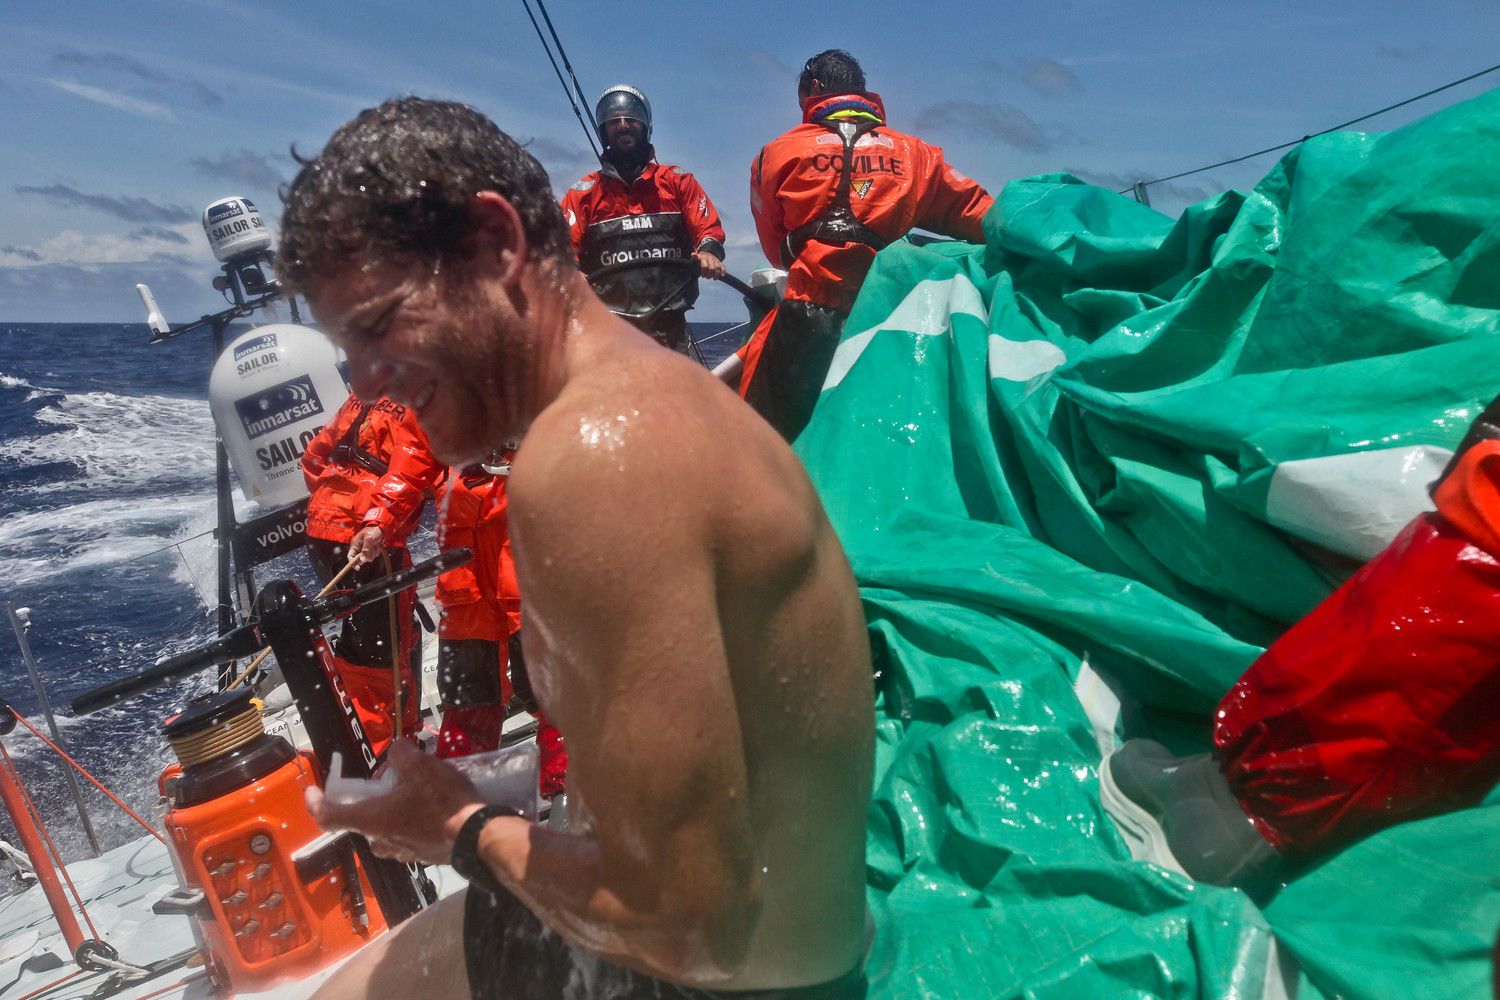 ... auf Groupama scheint es etwas entspannter zuzugehen. Charles Caudrelier bereitet sich mit einer Dusche auf das Finale vor. Skipper...© Yann Riou/Groupama Sailing Team/Volvo Ocean Race